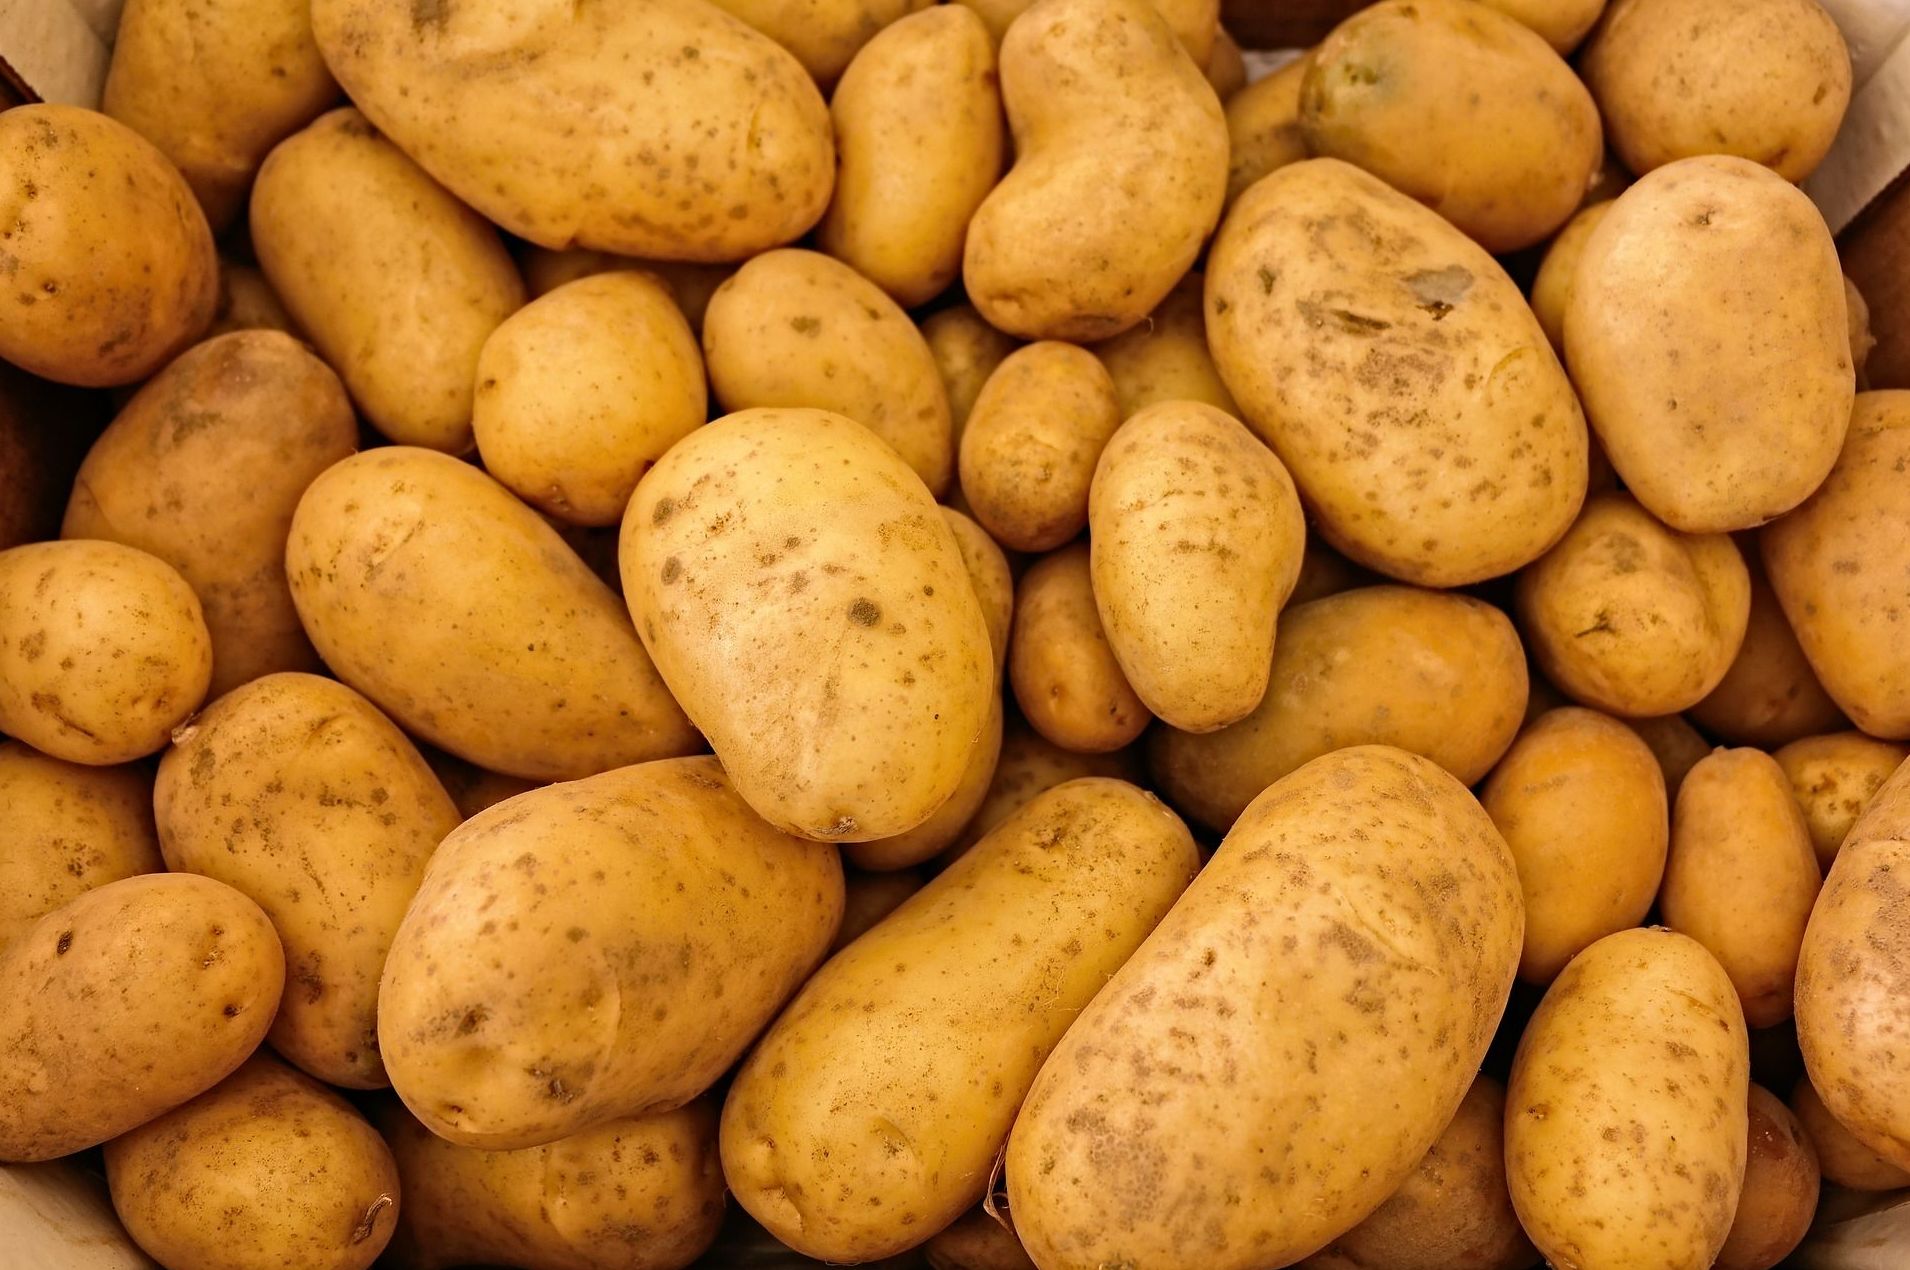 Mayorista de patatas en el País Vasco